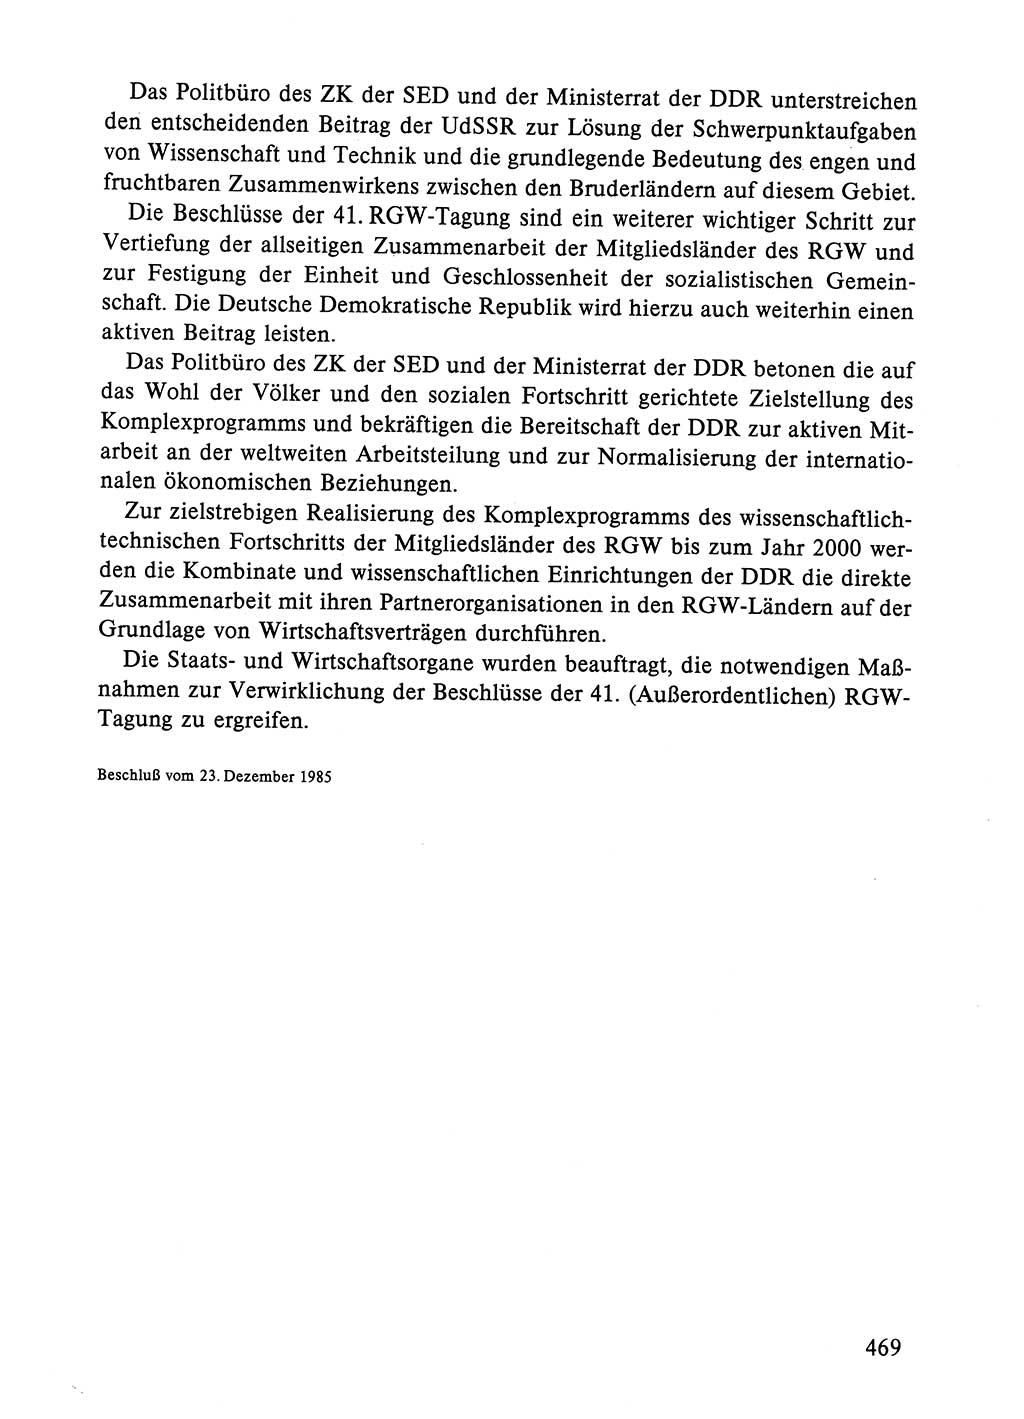 Dokumente der Sozialistischen Einheitspartei Deutschlands (SED) [Deutsche Demokratische Republik (DDR)] 1984-1985, Seite 469 (Dok. SED DDR 1984-1985, S. 469)